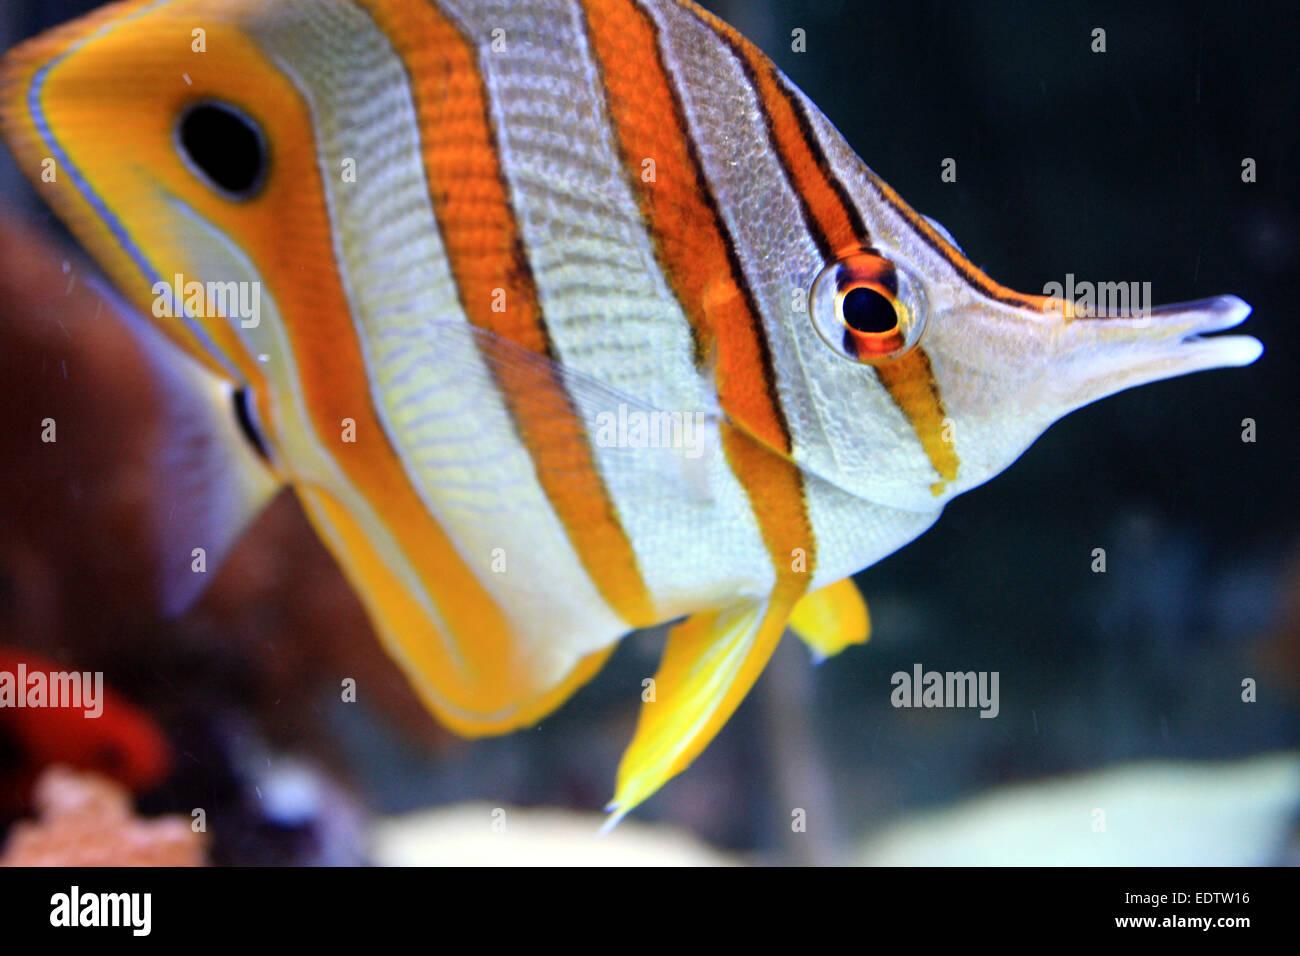 Una Copperband butterflyfish, también conocido como picuda de peces de coral, tiene una nariz estrecha y la boca se utiliza para cazar en pequeñas grietas o agujeros. Foto de stock